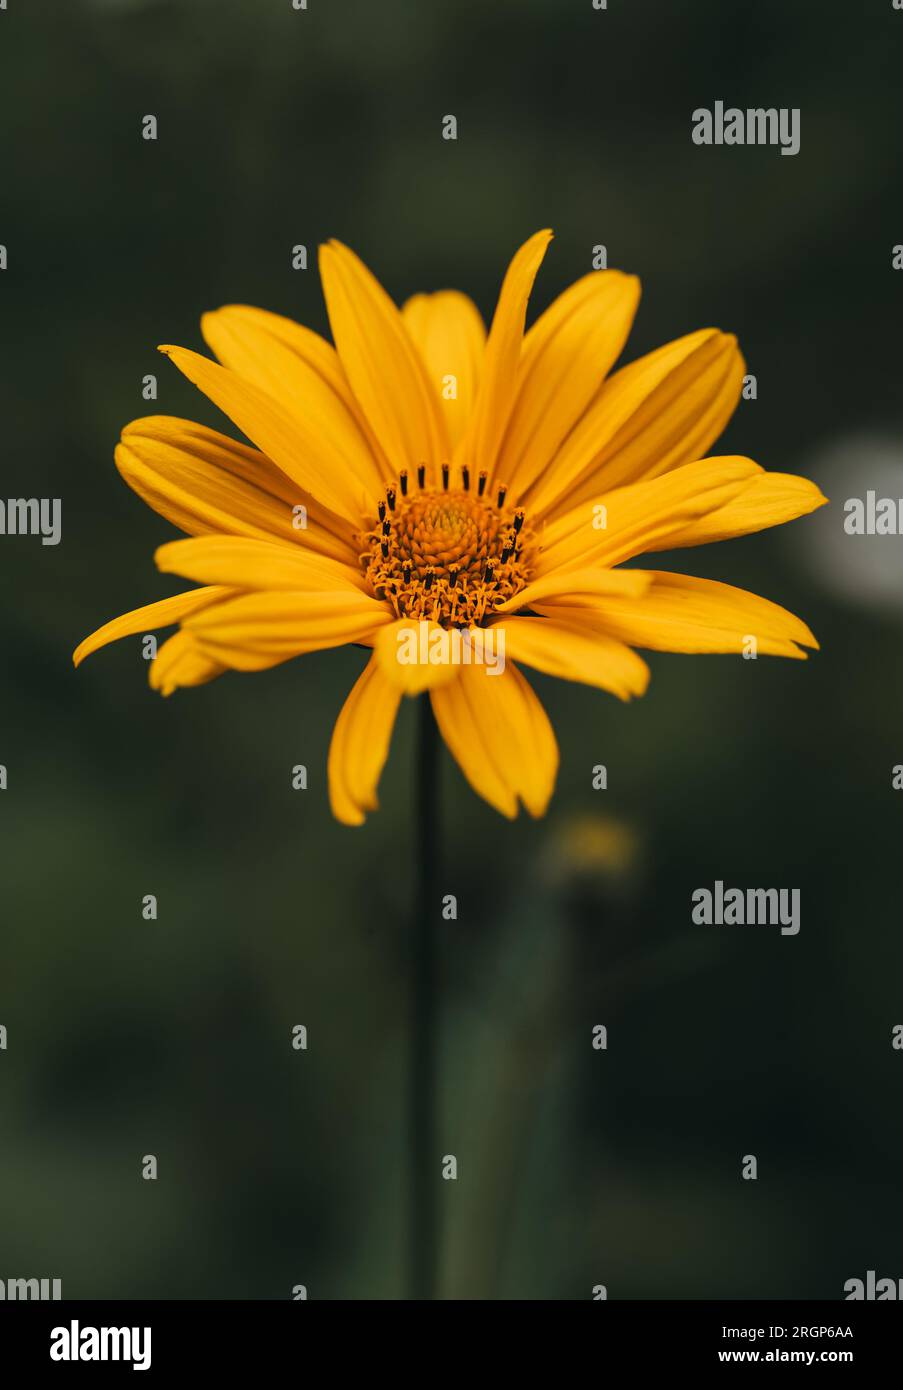 Gros plan de faux tournesol jaune oeil de boeuf fleurissant le jour de l'été. Banque D'Images